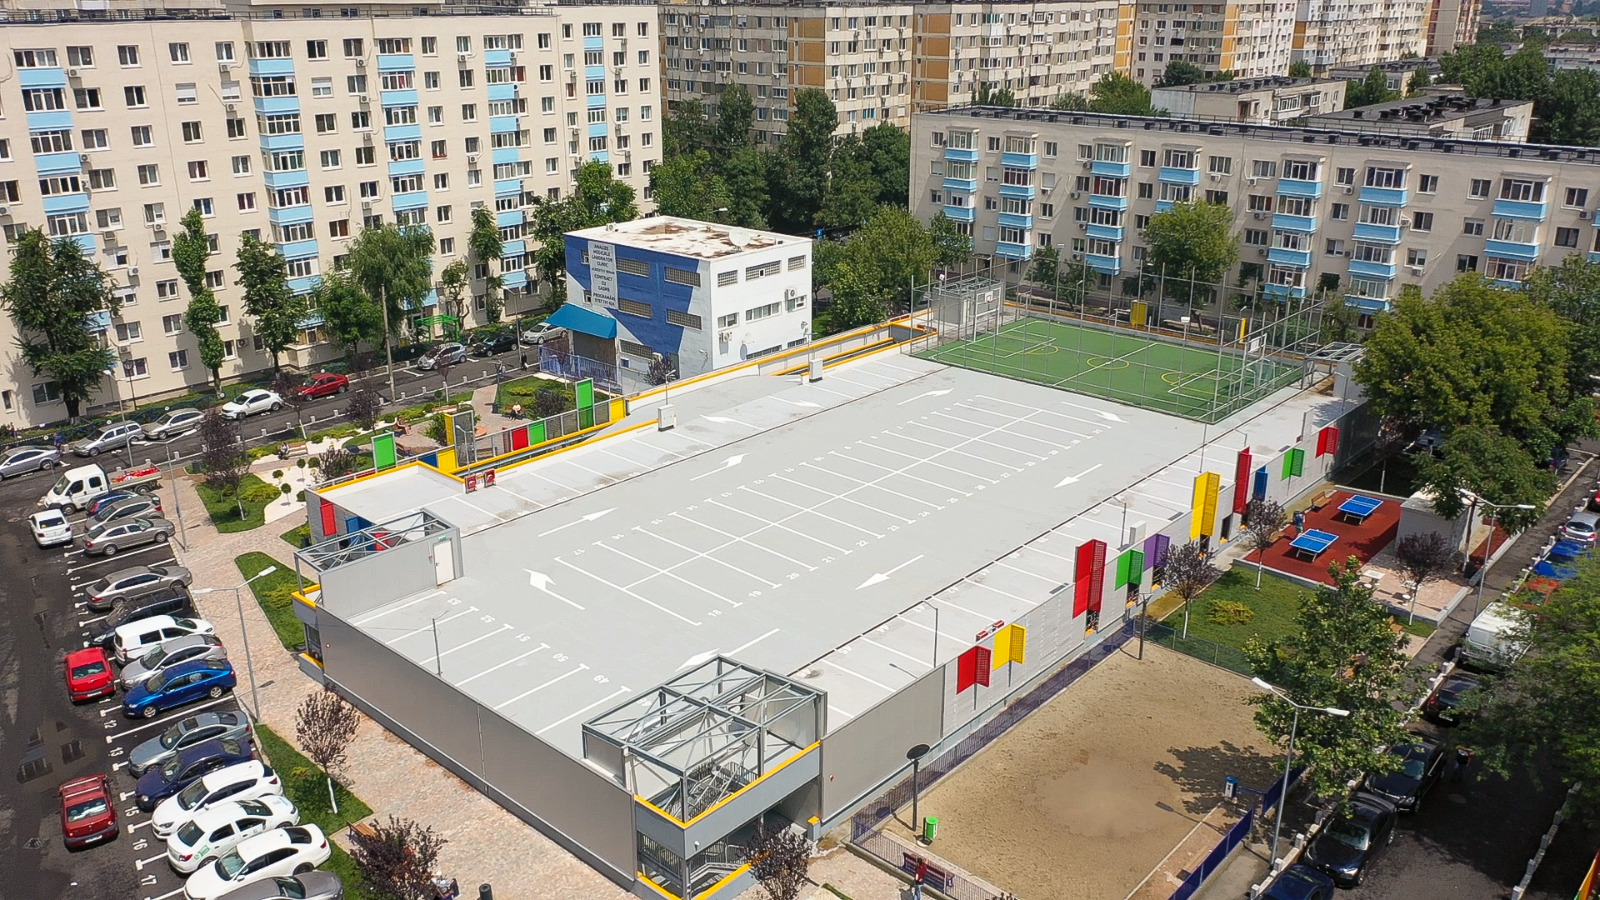 Parcare publică supraetajată, cu teren de sport pe acoperiș